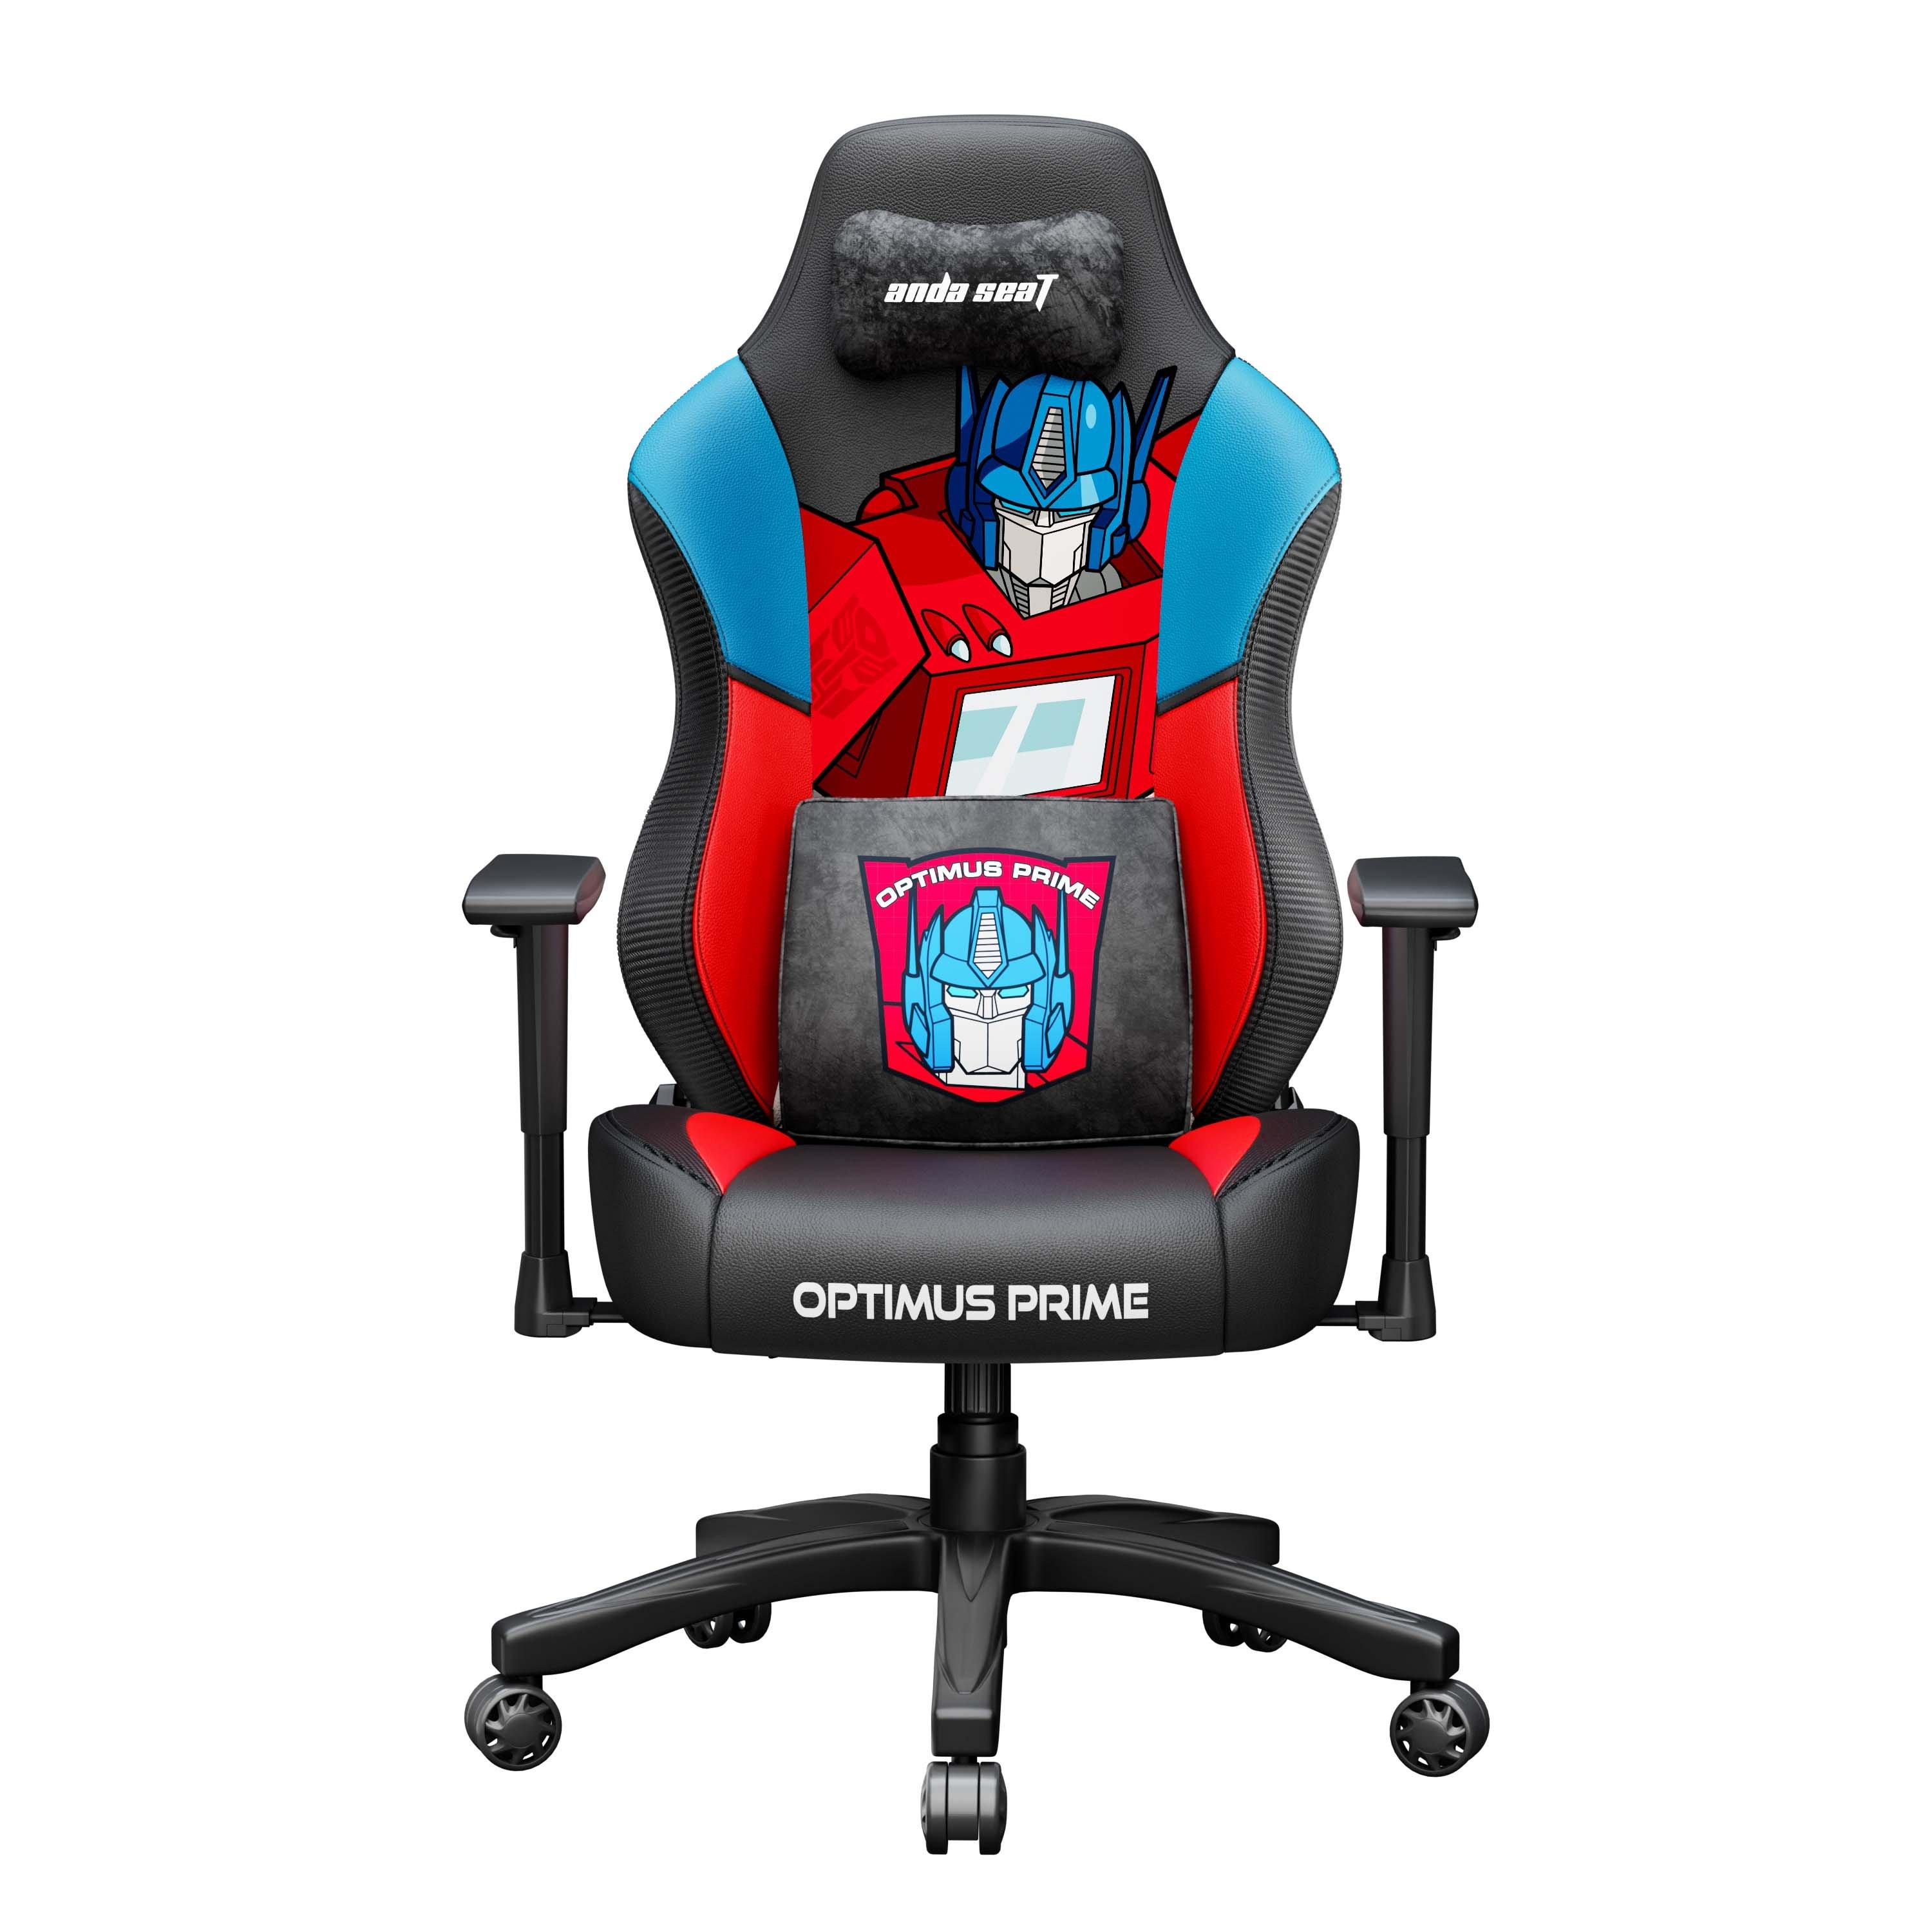 Andaseat Optimus Prime Edition Premium Gaming Chair